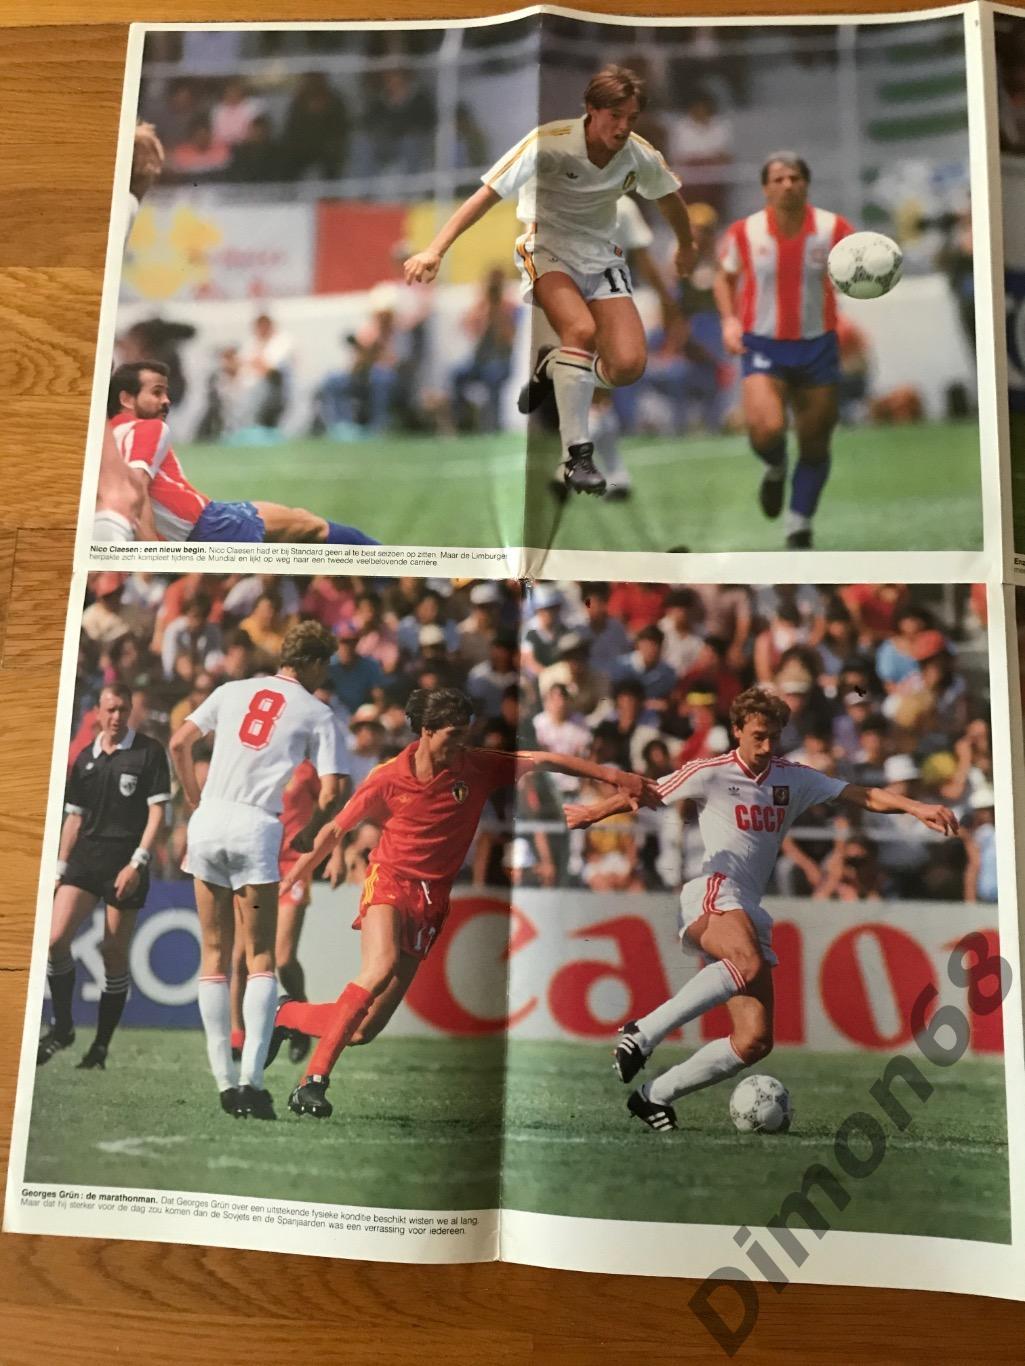 voetbal magazine mexico86г сб бельгии игровые моменты постеры 6